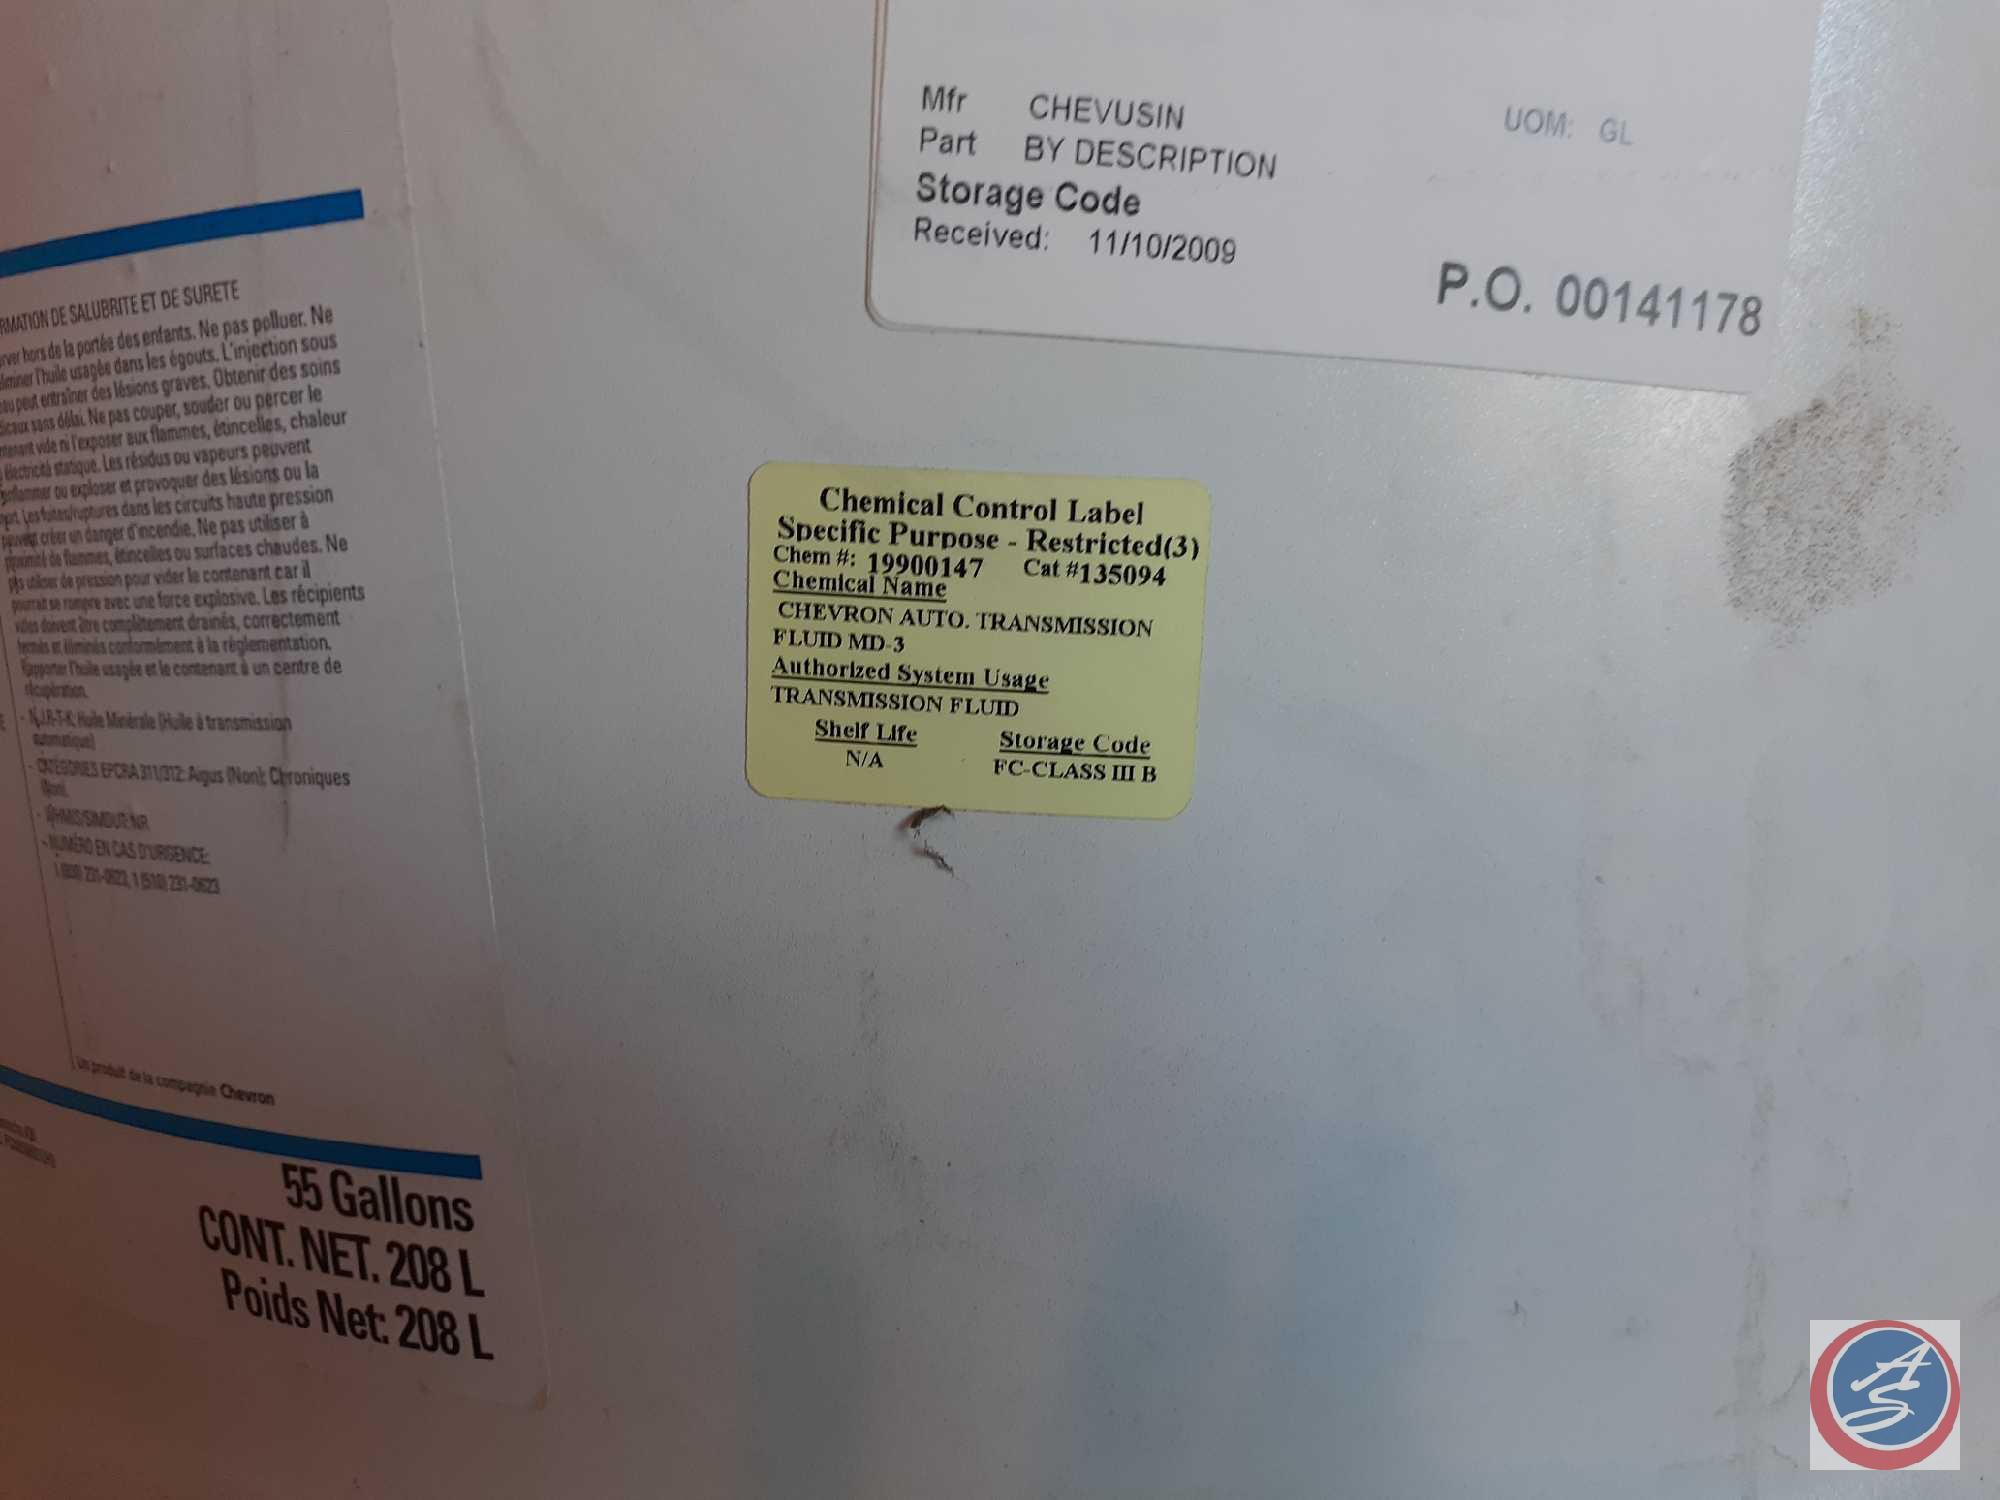 Chevron Transmission Fluid MD-3 (unsealed for sampling) missing 10gal